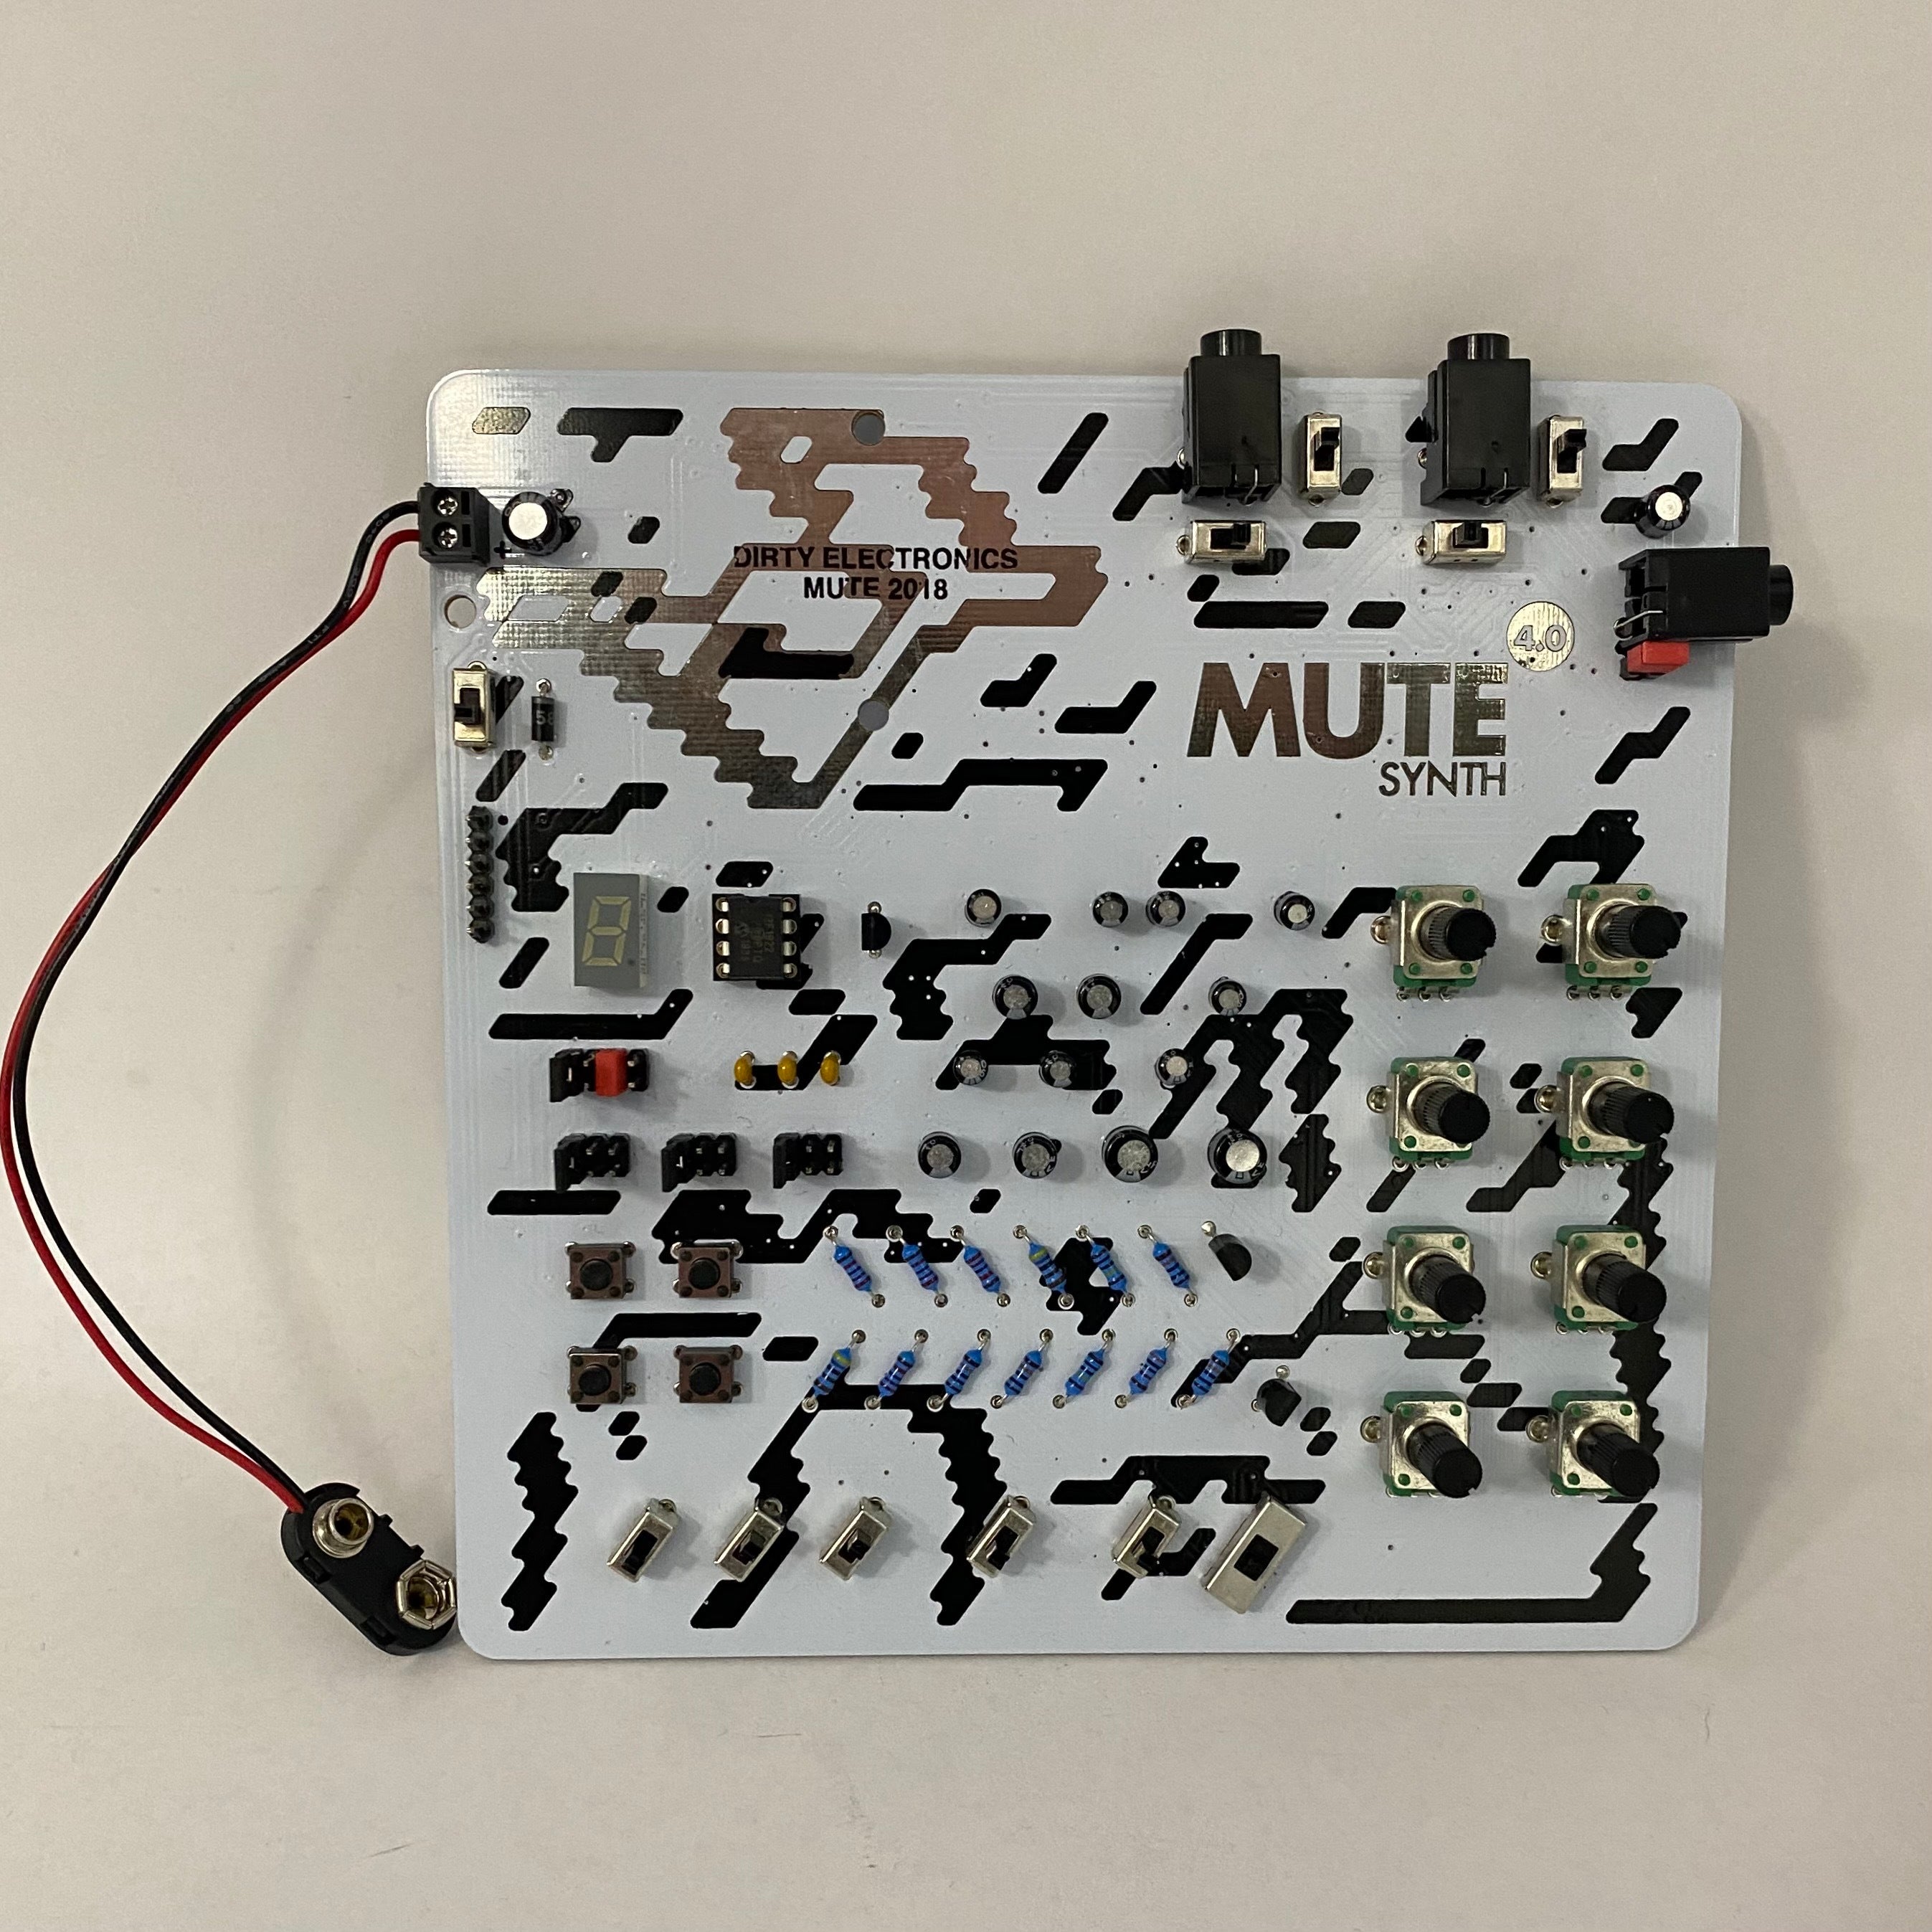 Dirty Electronics MuteSynth4